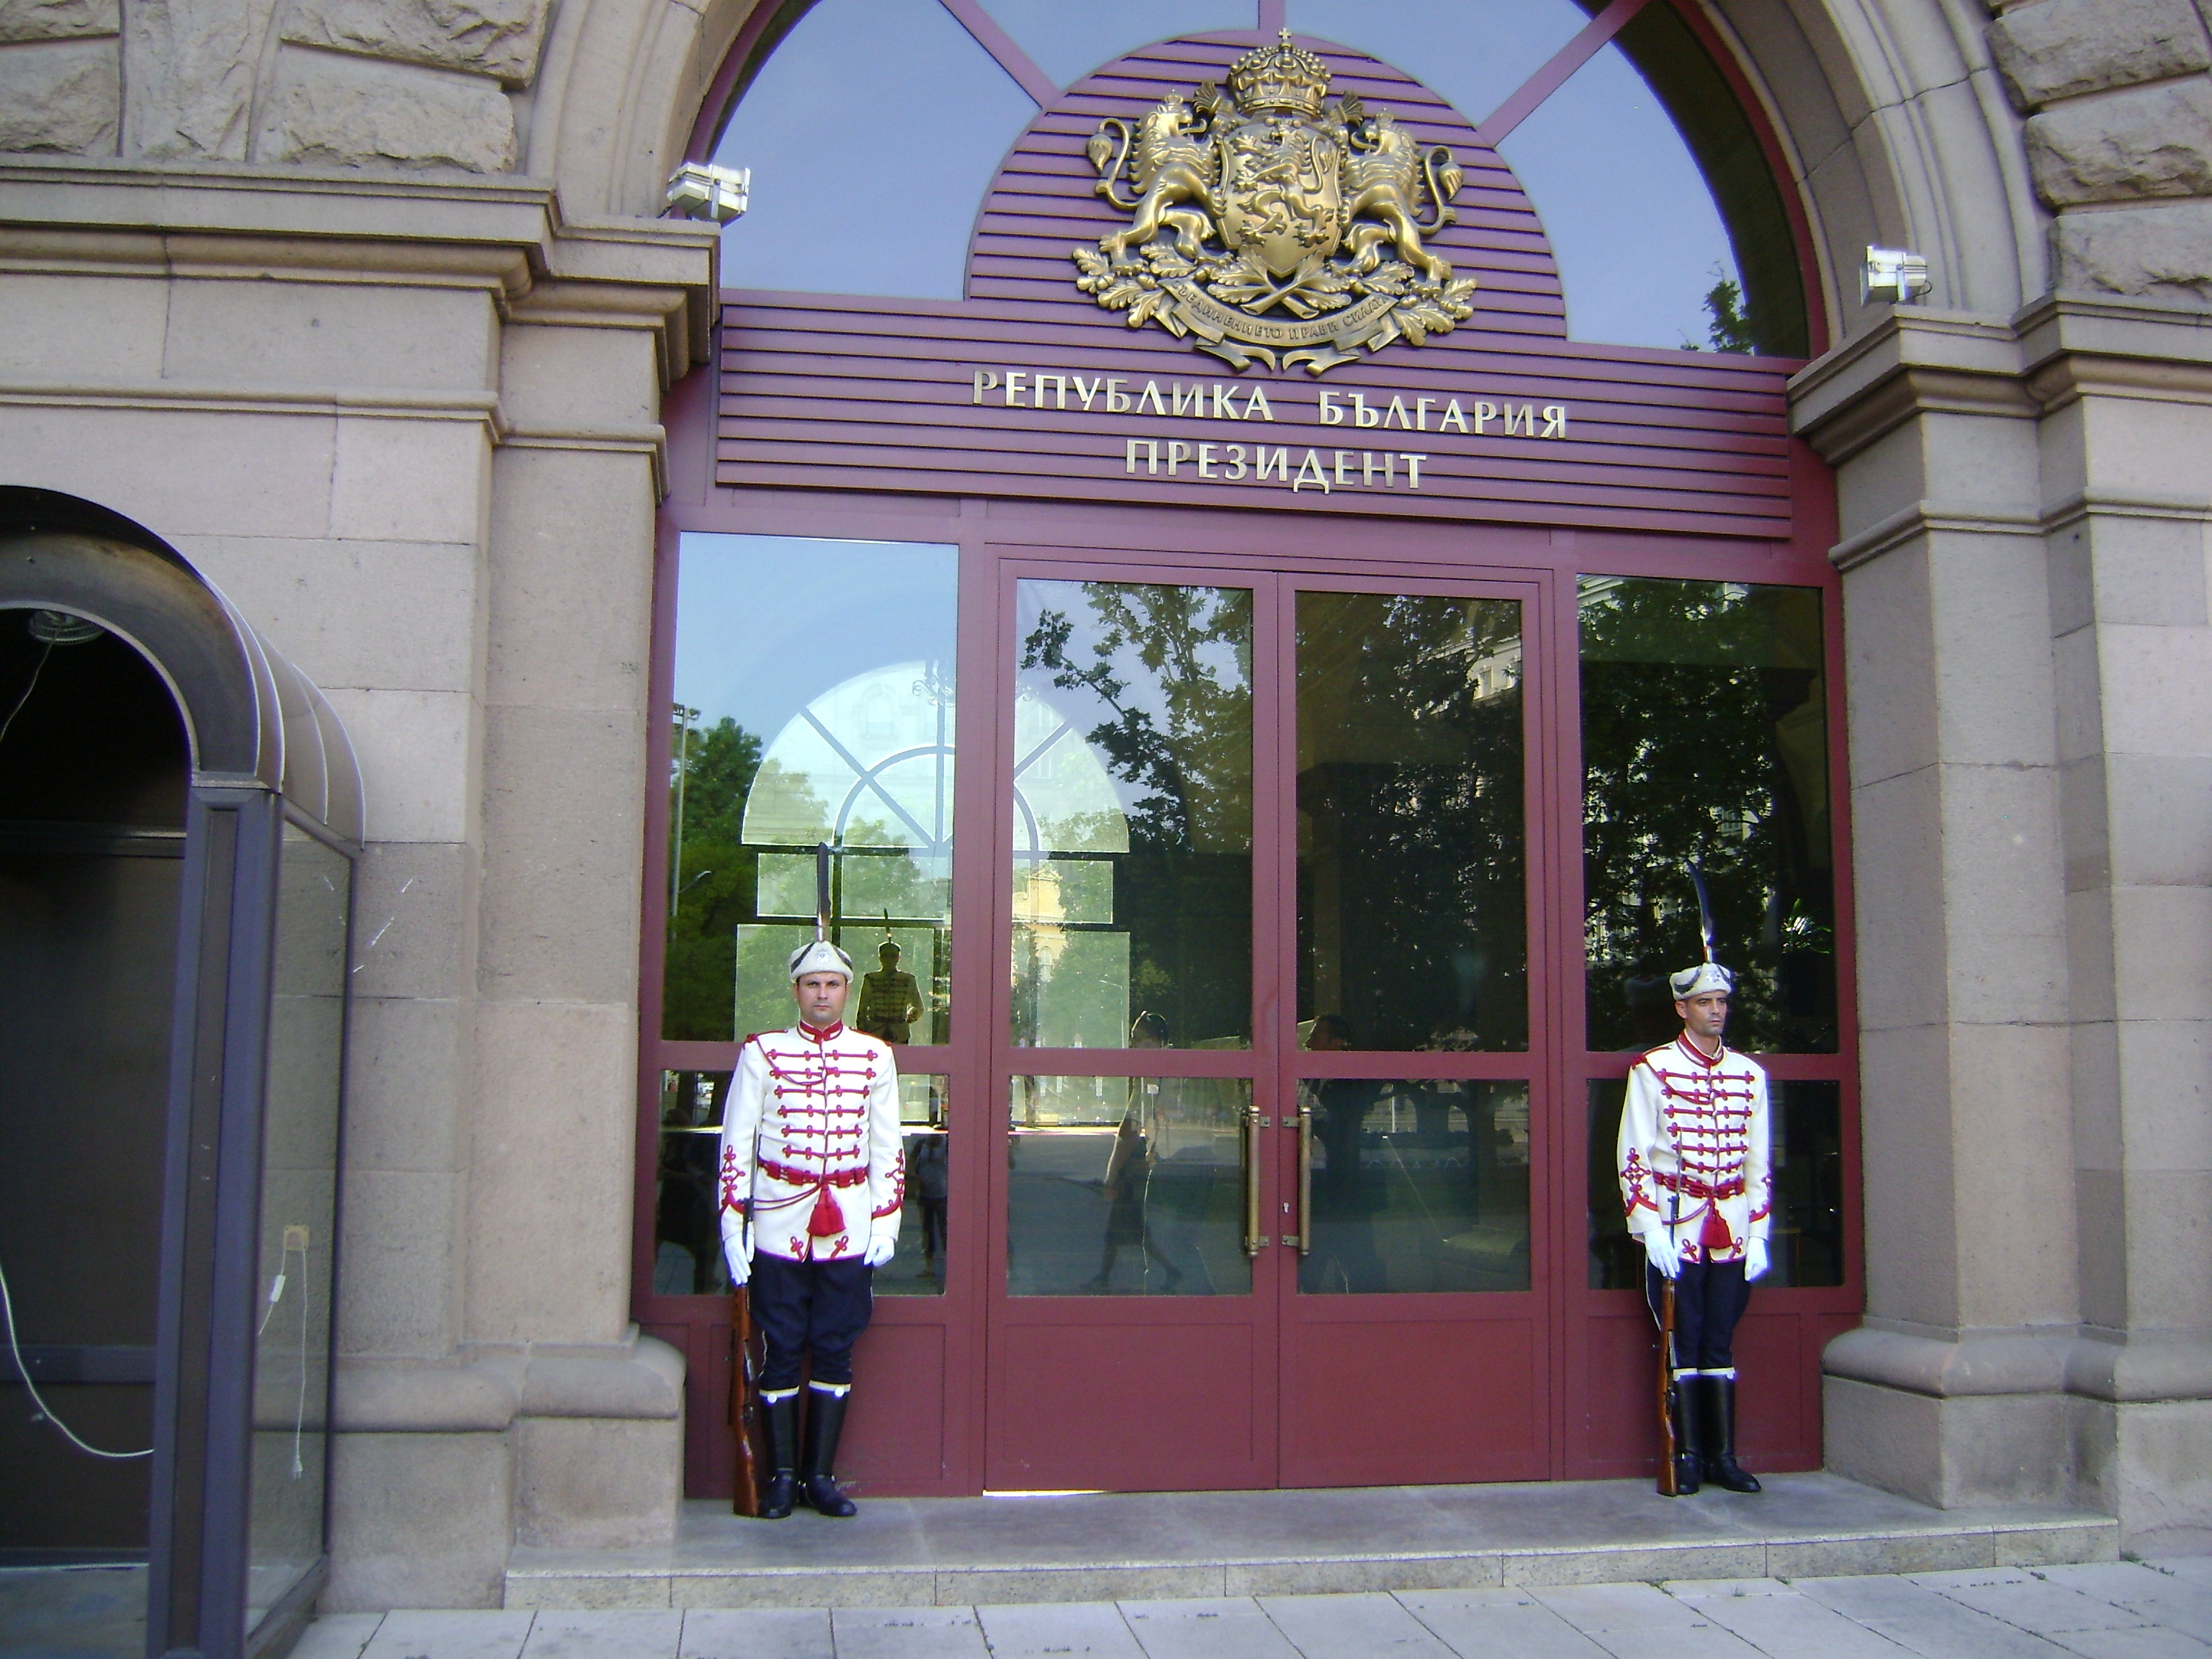 The Guards in Sofia